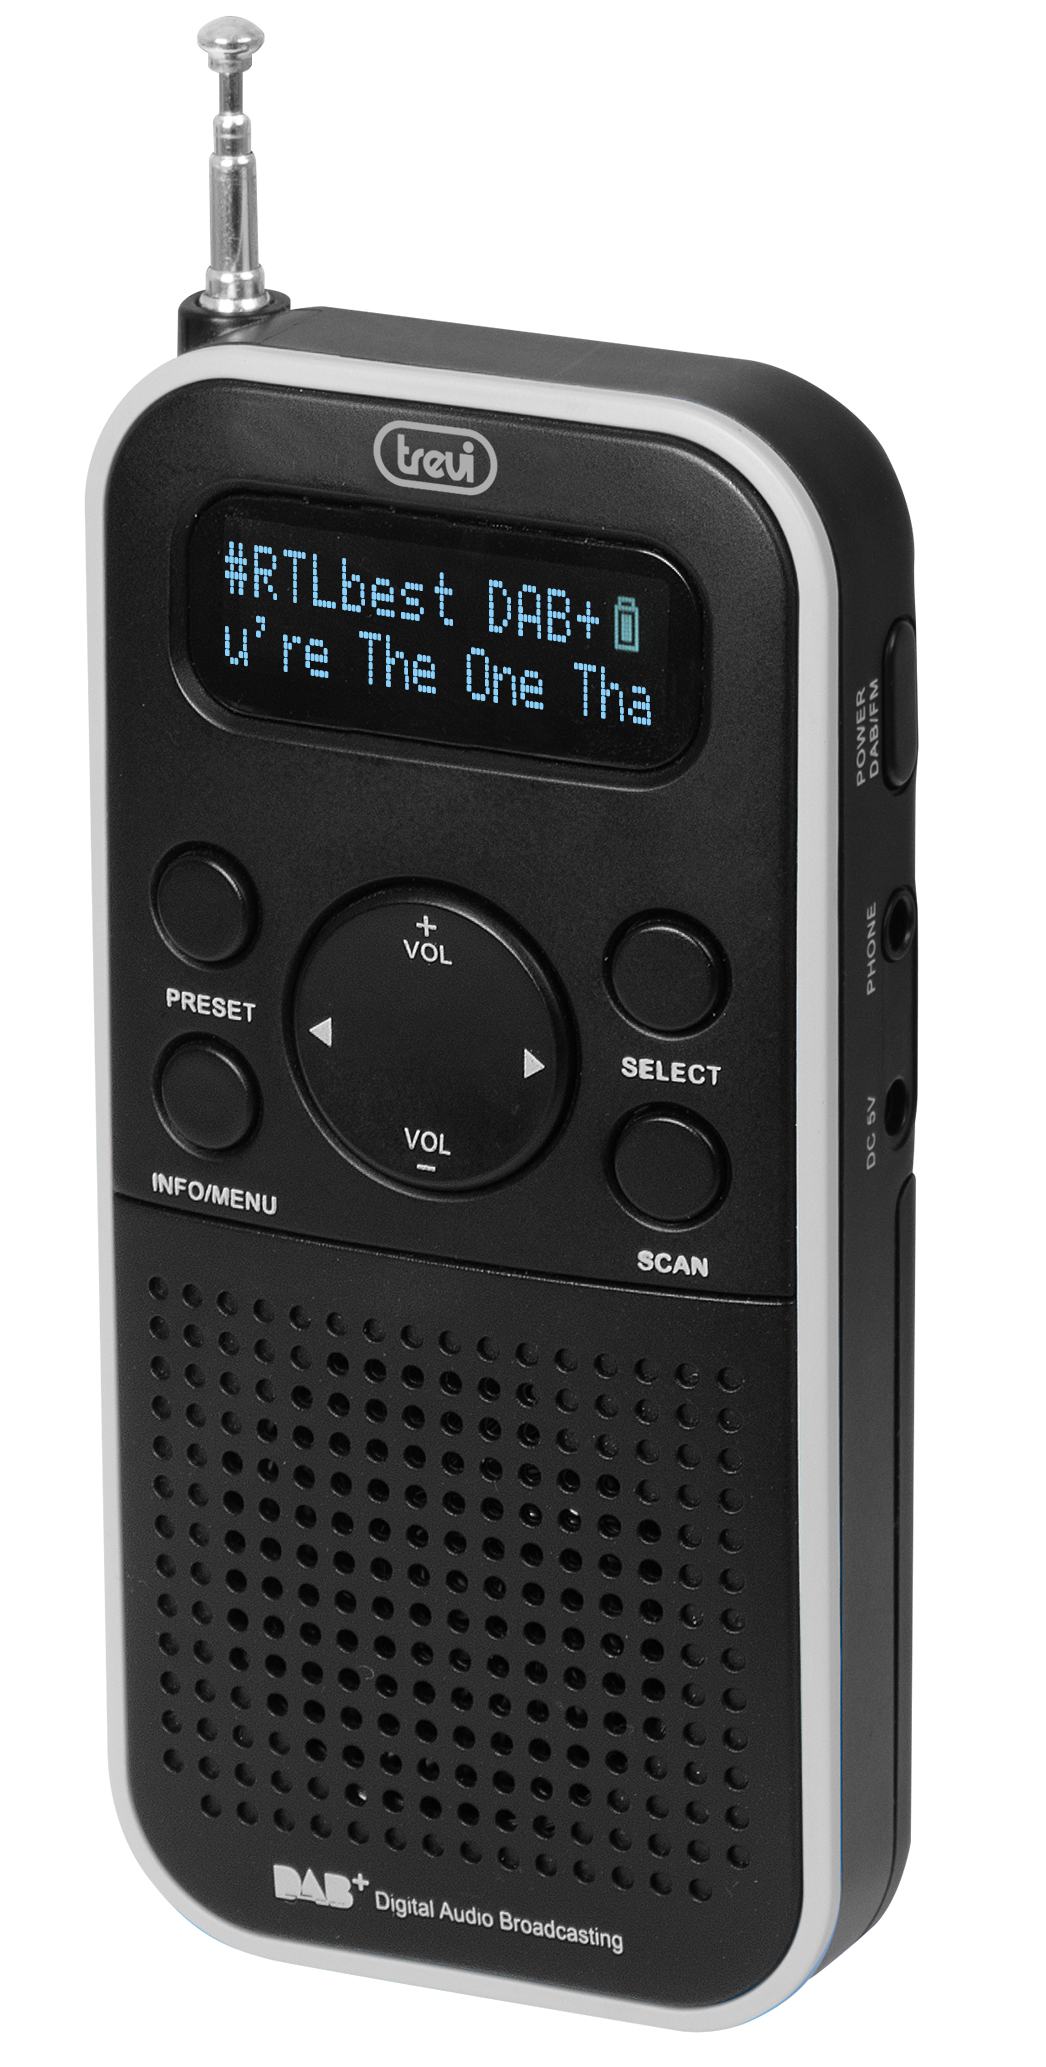 DAB-7F90-R, DAB-radio portable, noir